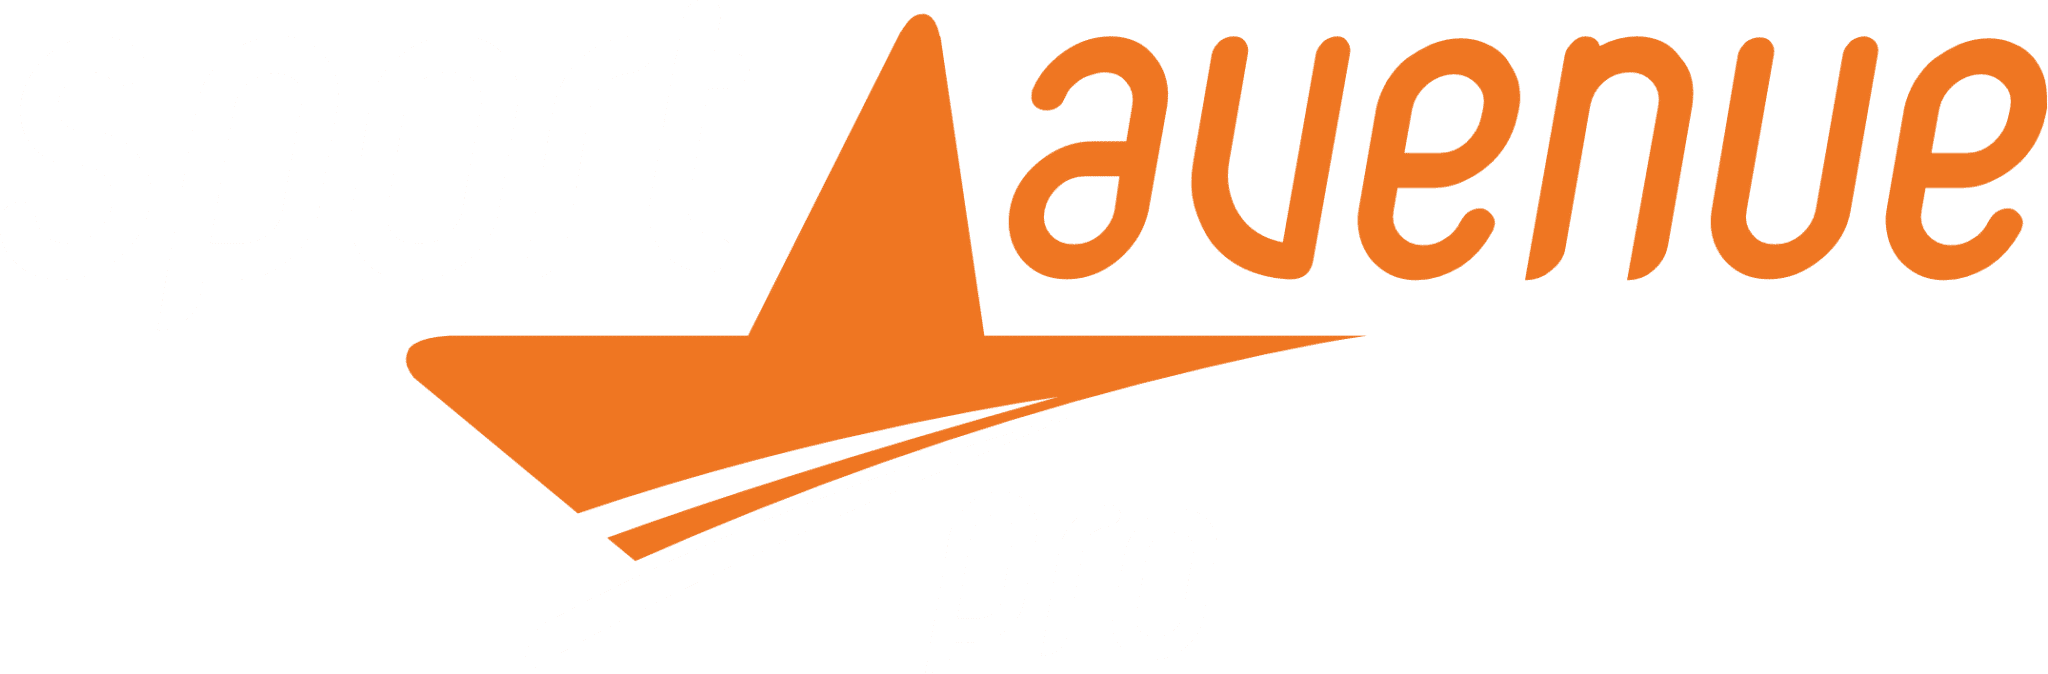 Logo Sport Avenue PRO